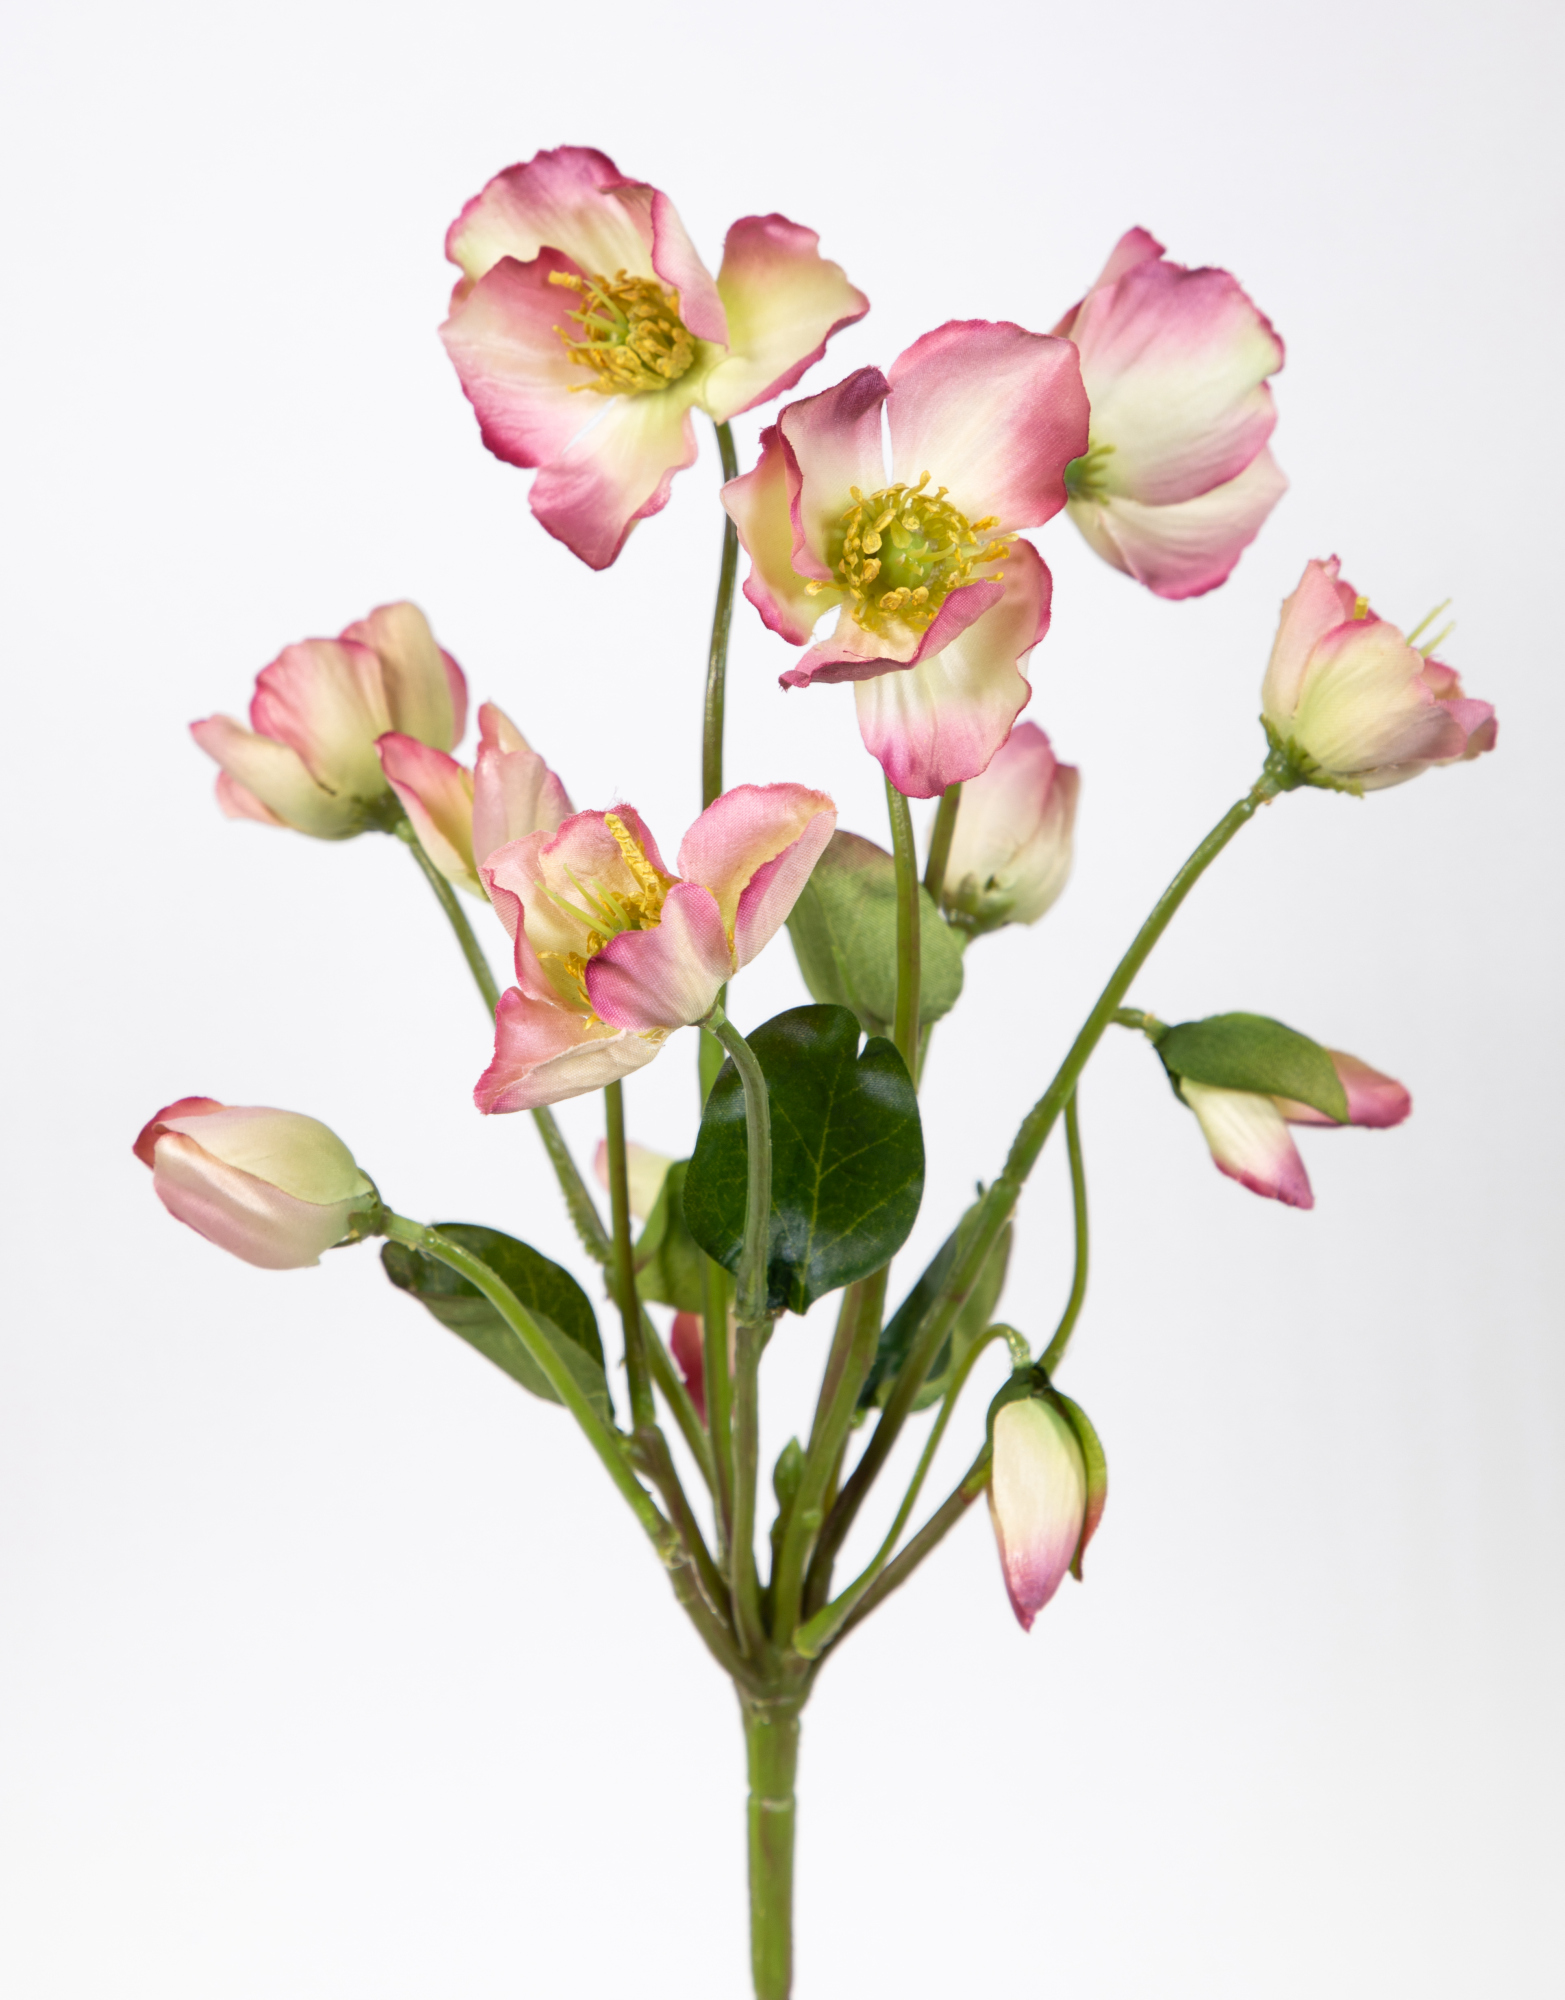 Christrosenbusch Natural 30cm rosa FT Kunstblumen künstliche Christrose Blumen Helleborus